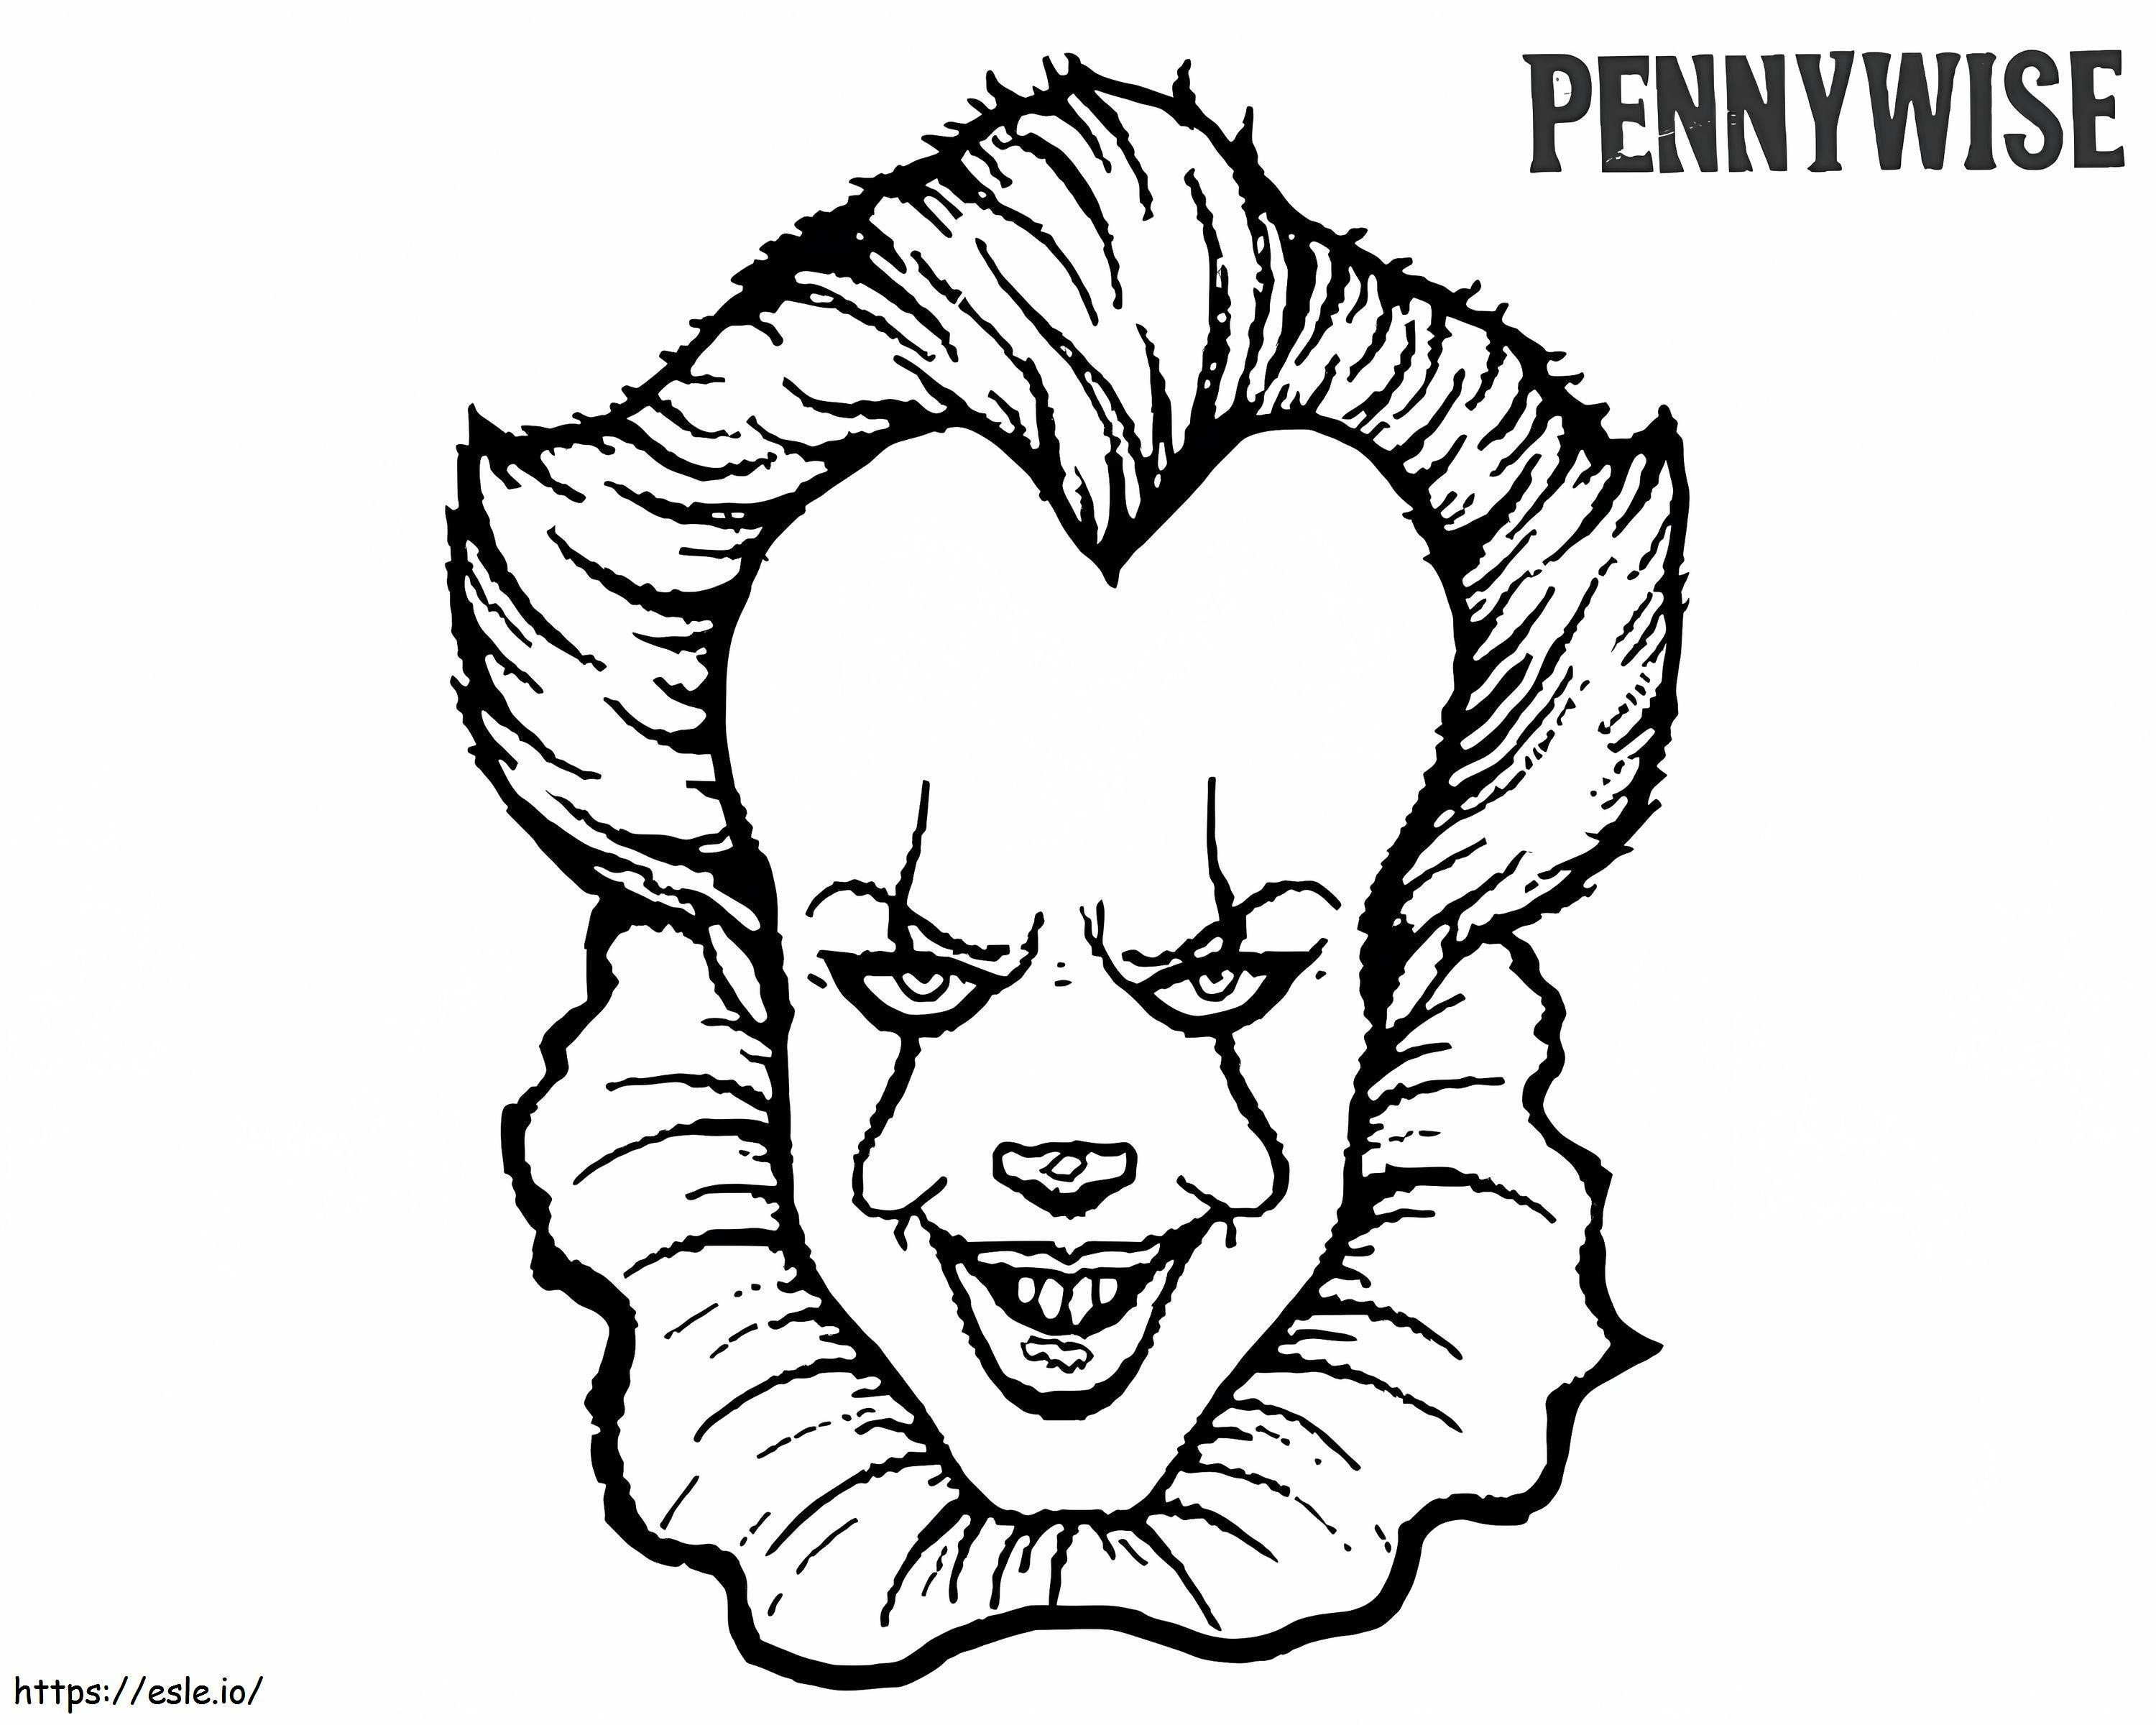 Coloriage Visage de Pennywise à imprimer dessin